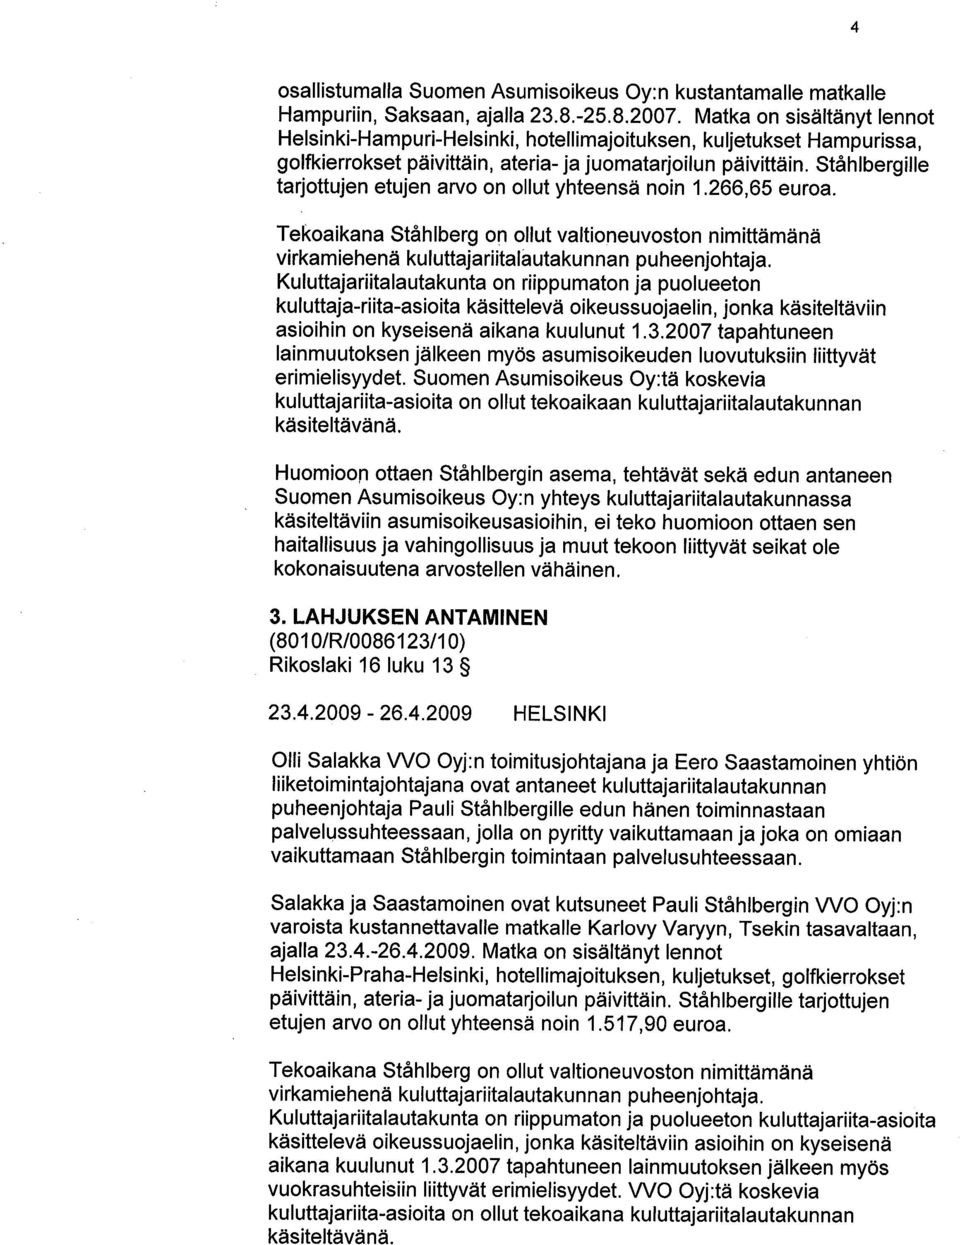 Ståhlbergille tarjottujen etujen arvo on ollut yhteensä noin 1.266,65 euroa. Tekoaikana Ståhlberg on ollut valtioneuvoston nimittämänä virkamiehenä kuluttajariitalautakunnan puheenjohtaja.